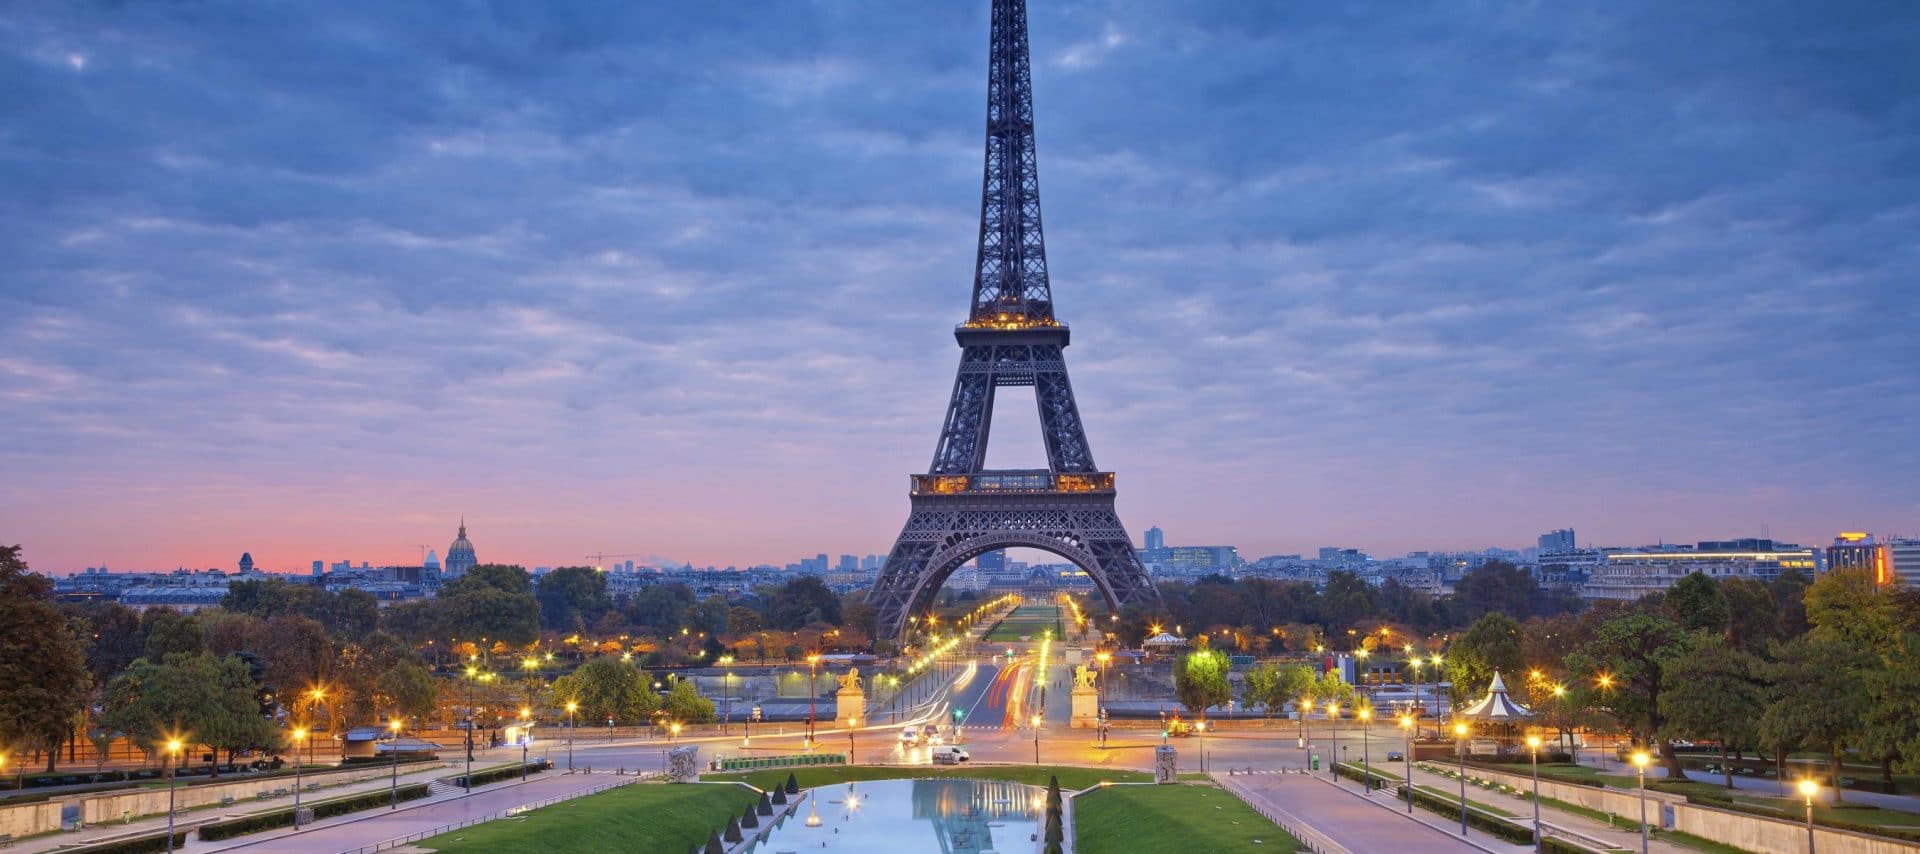 Une vue imprenable sur la Tour Eiffel à Paris au crépuscule, parfaite pour un voyage romantique.